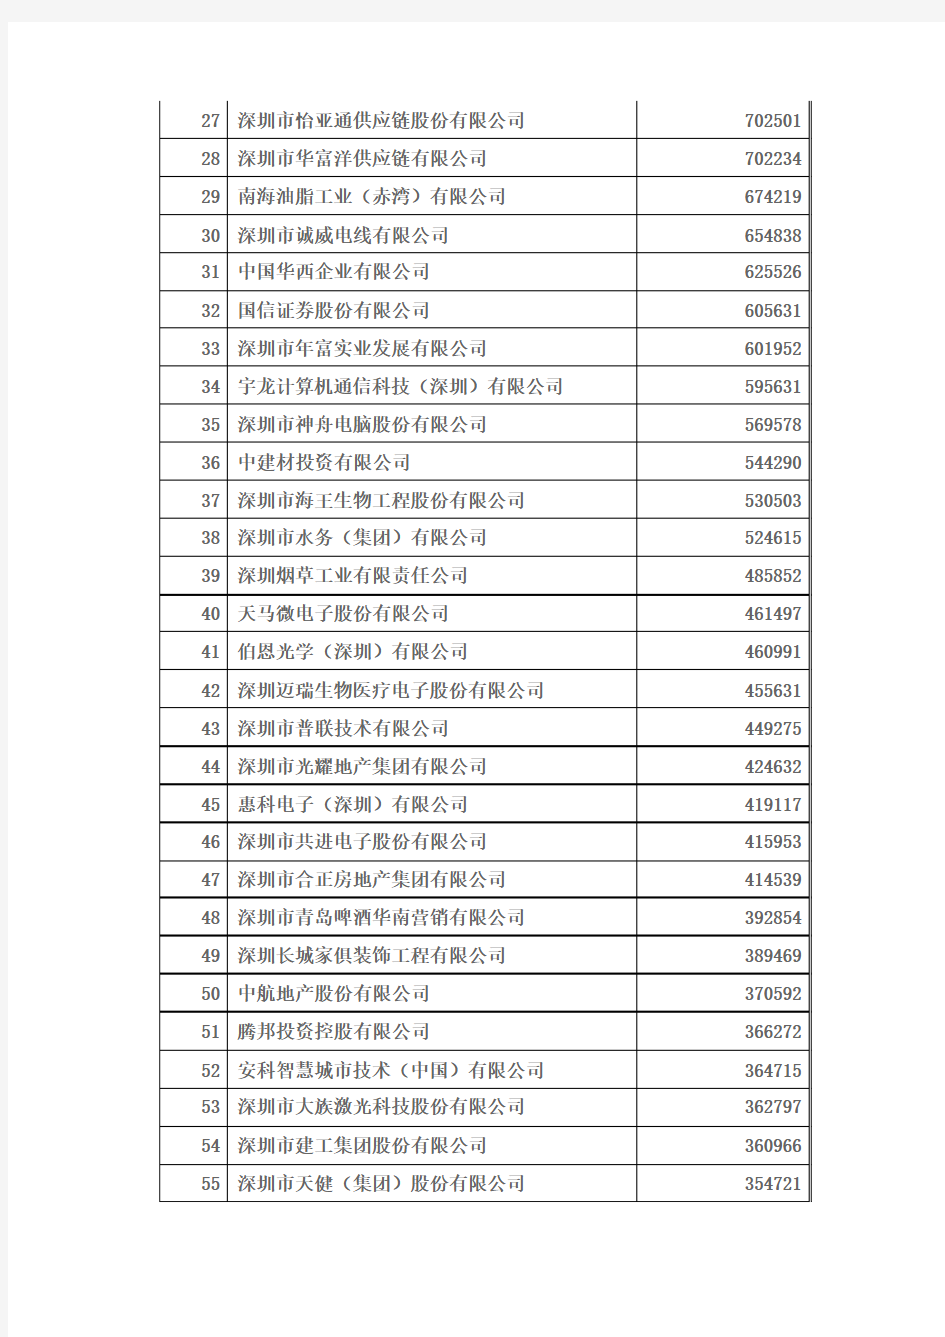 2012深圳企业100强排序名单